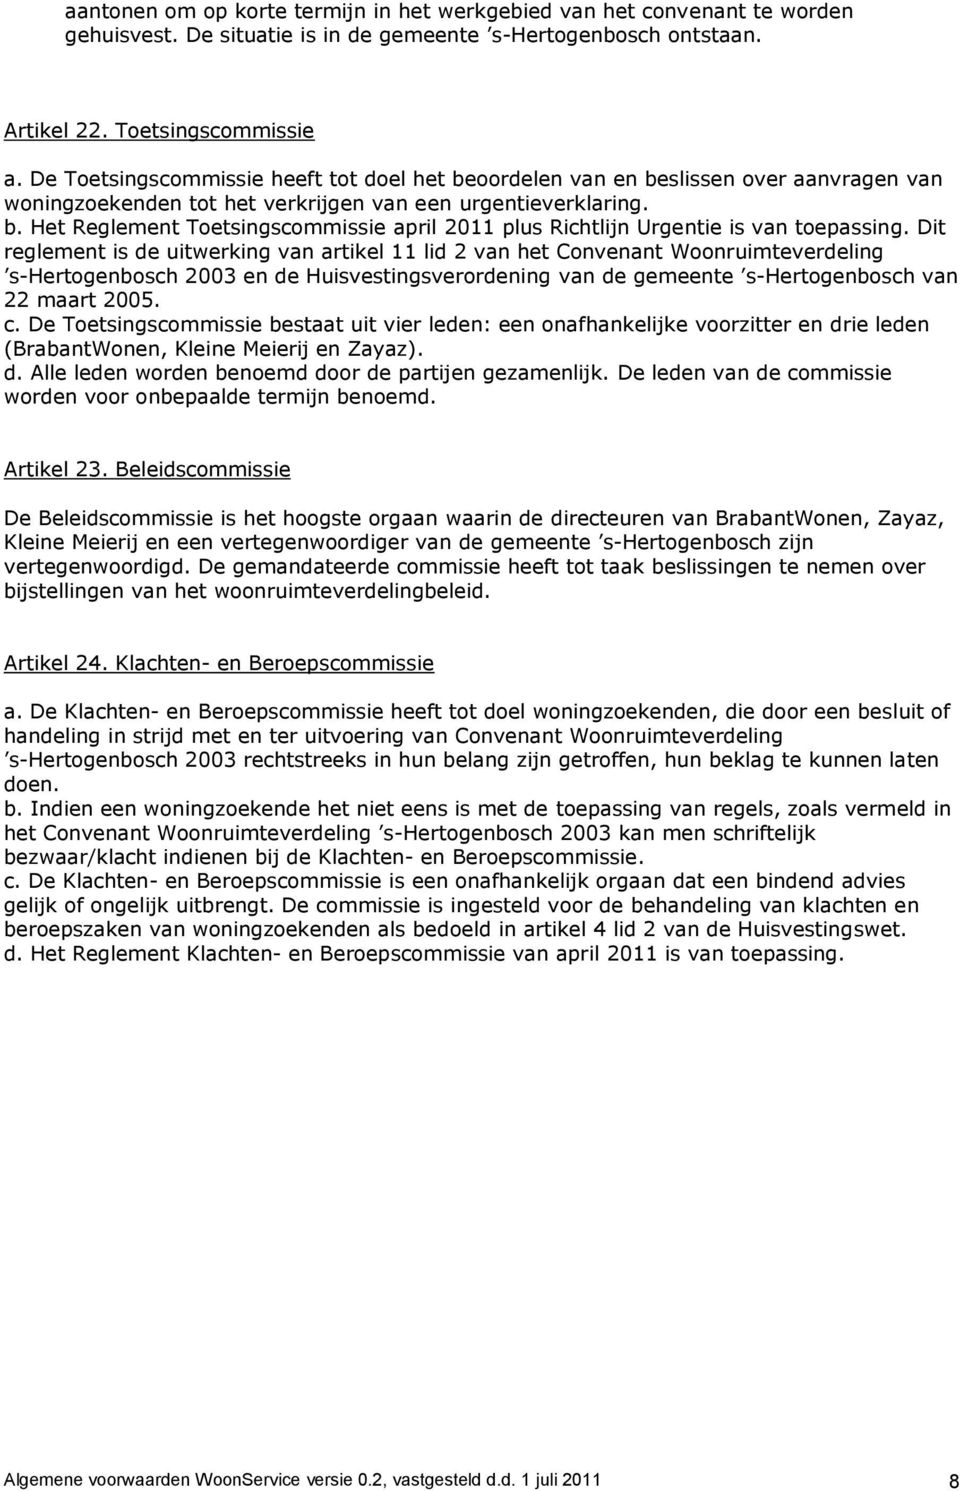 Dit reglement is de uitwerking van artikel 11 lid 2 van het Convenant Woonruimteverdeling s-hertogenbosch 2003 en de Huisvestingsverordening van de gemeente s-hertogenbosch van 22 maart 2005. c.